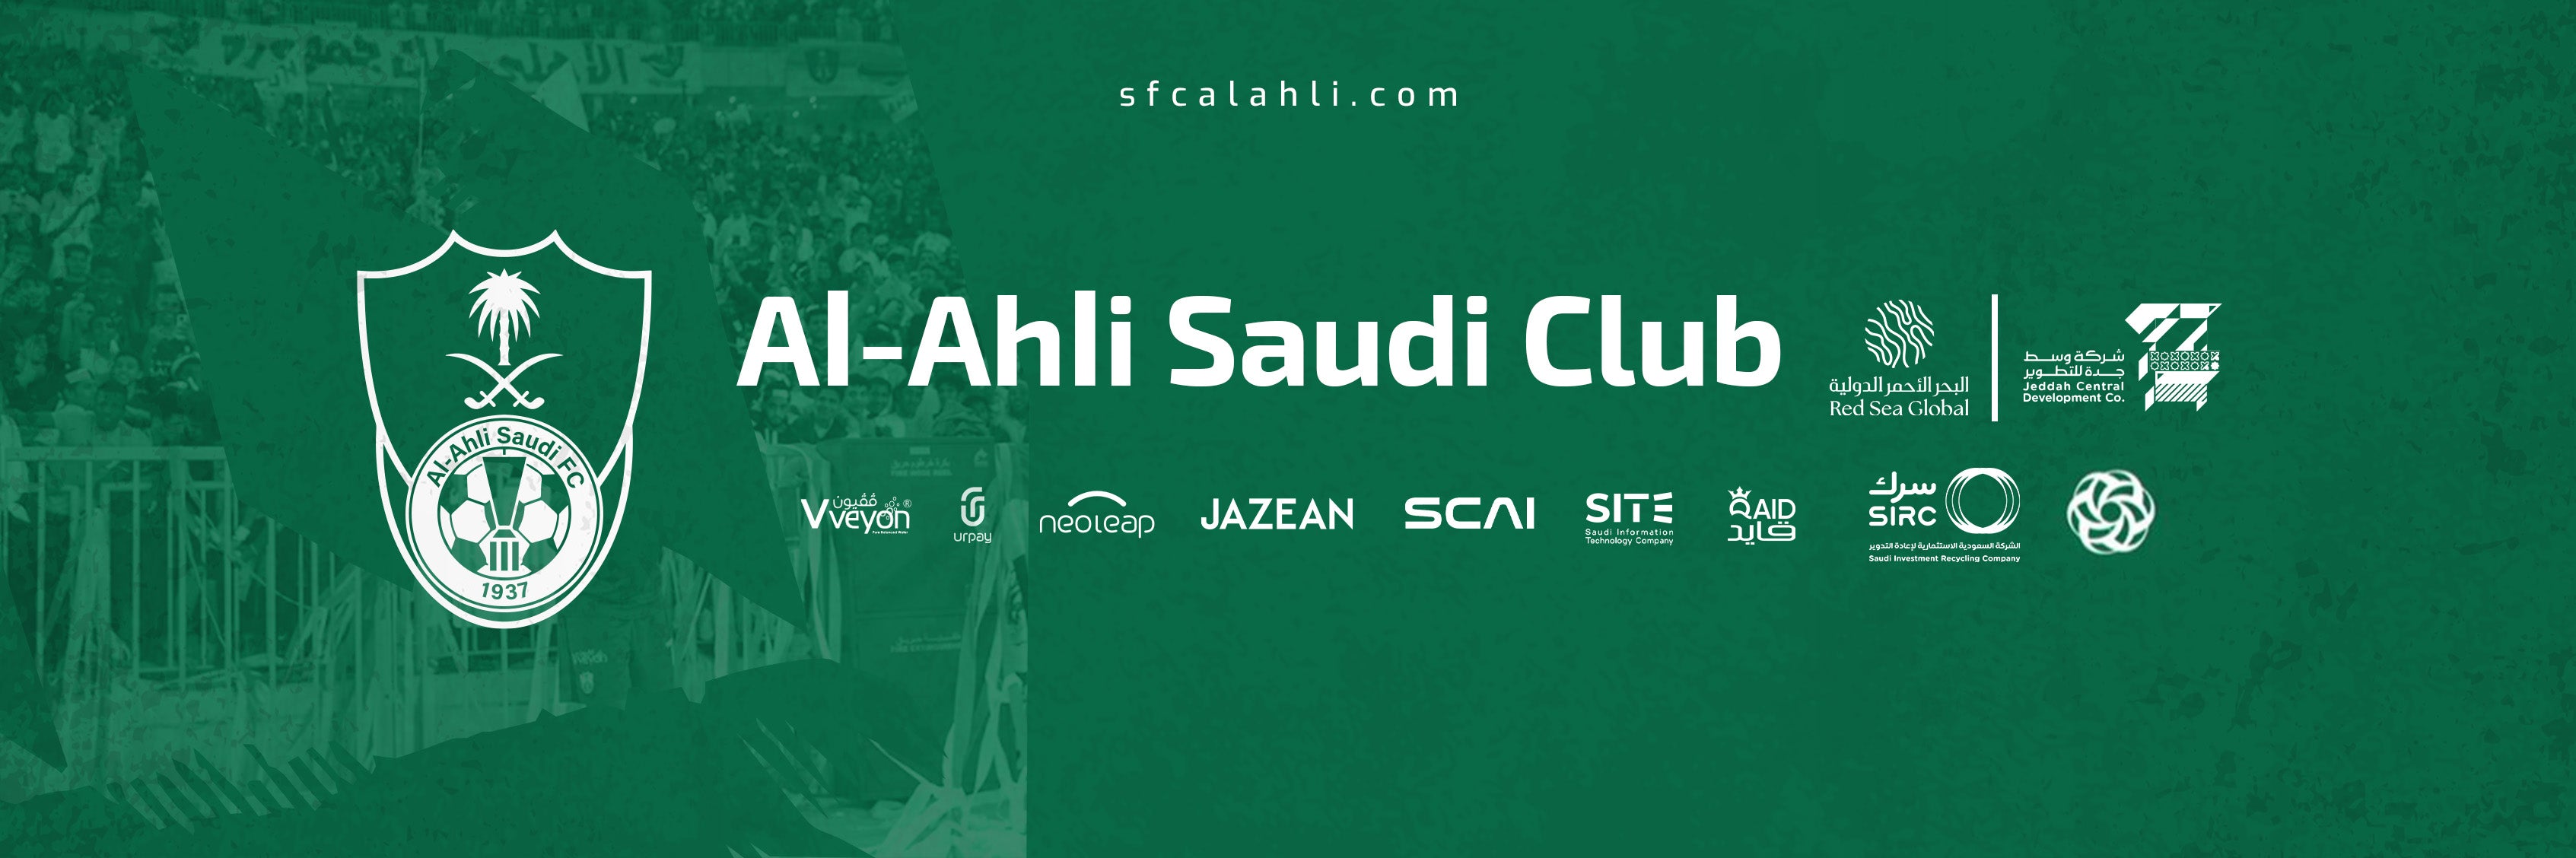 Al-Ahli Saudi Club